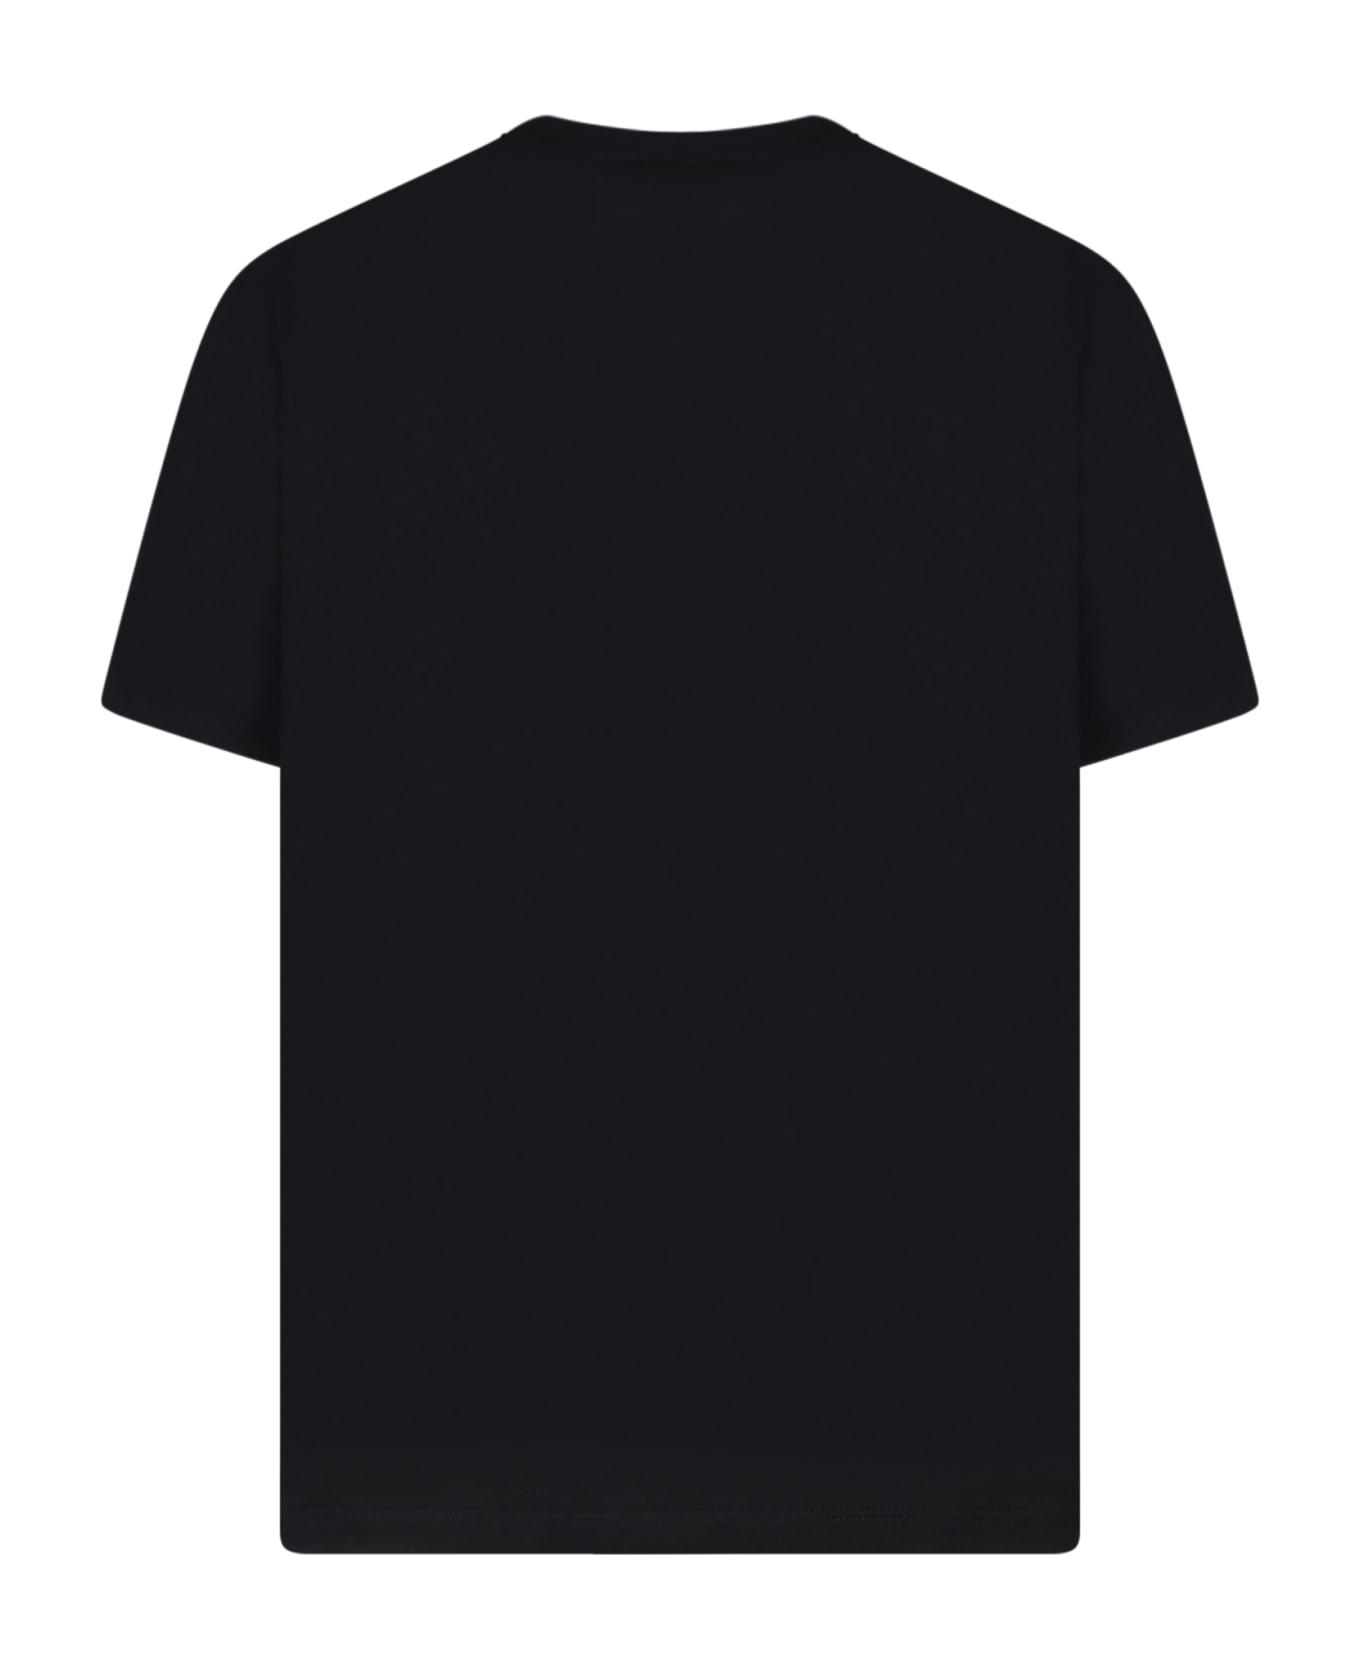 Balmain Black Star Print T-shirt - Black